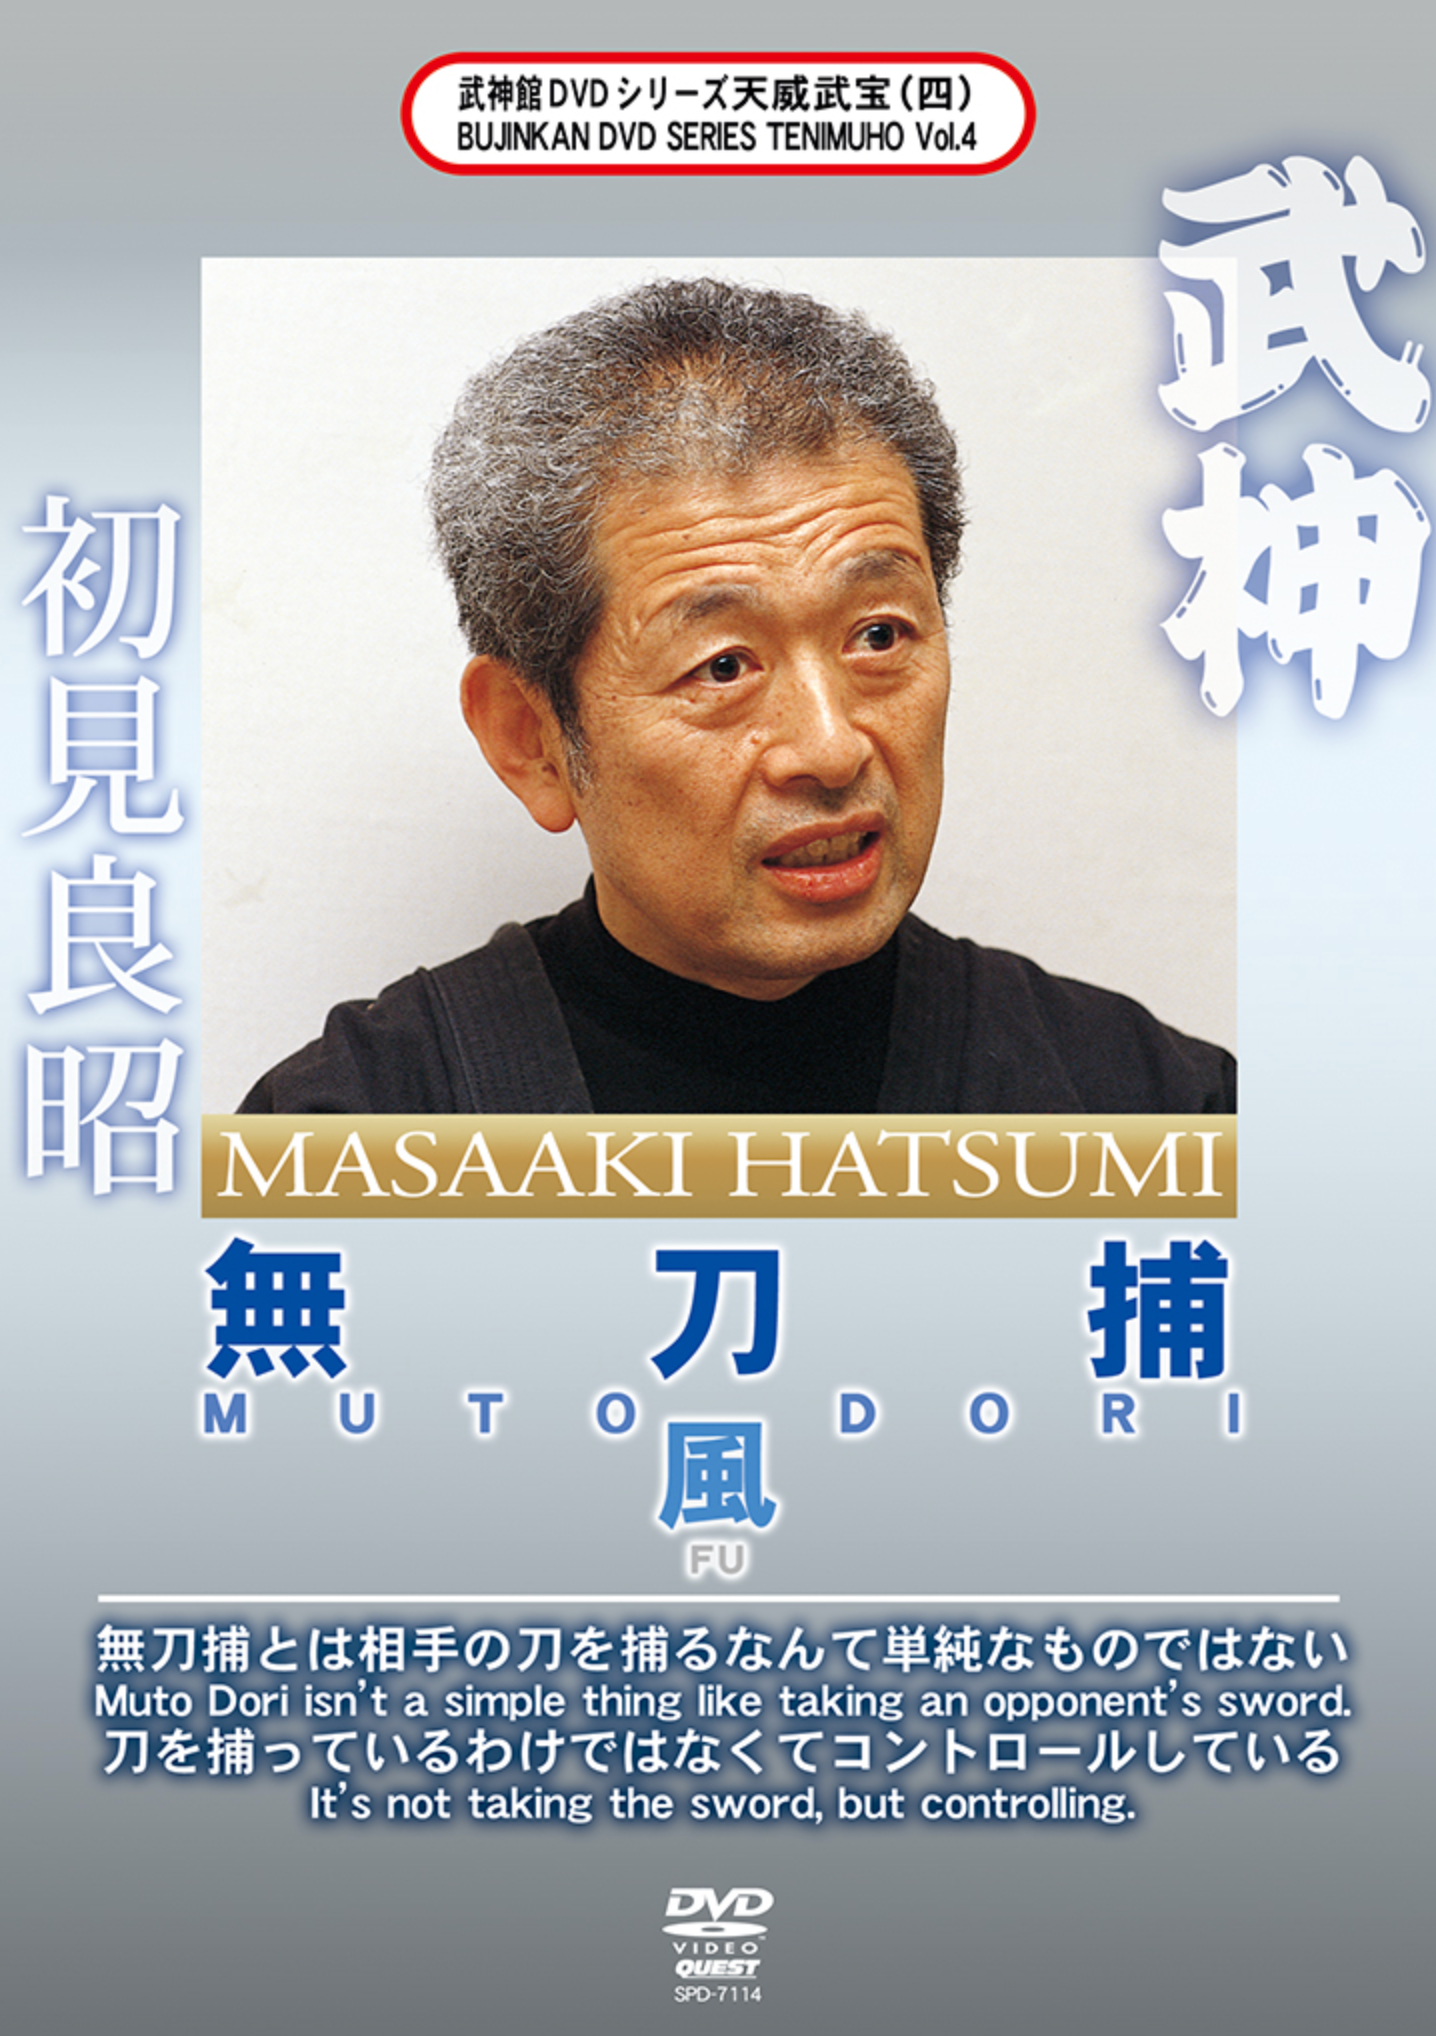 Bujinkan Mutodori Fu DVD with Masaaki Hatsumi - Budovideos